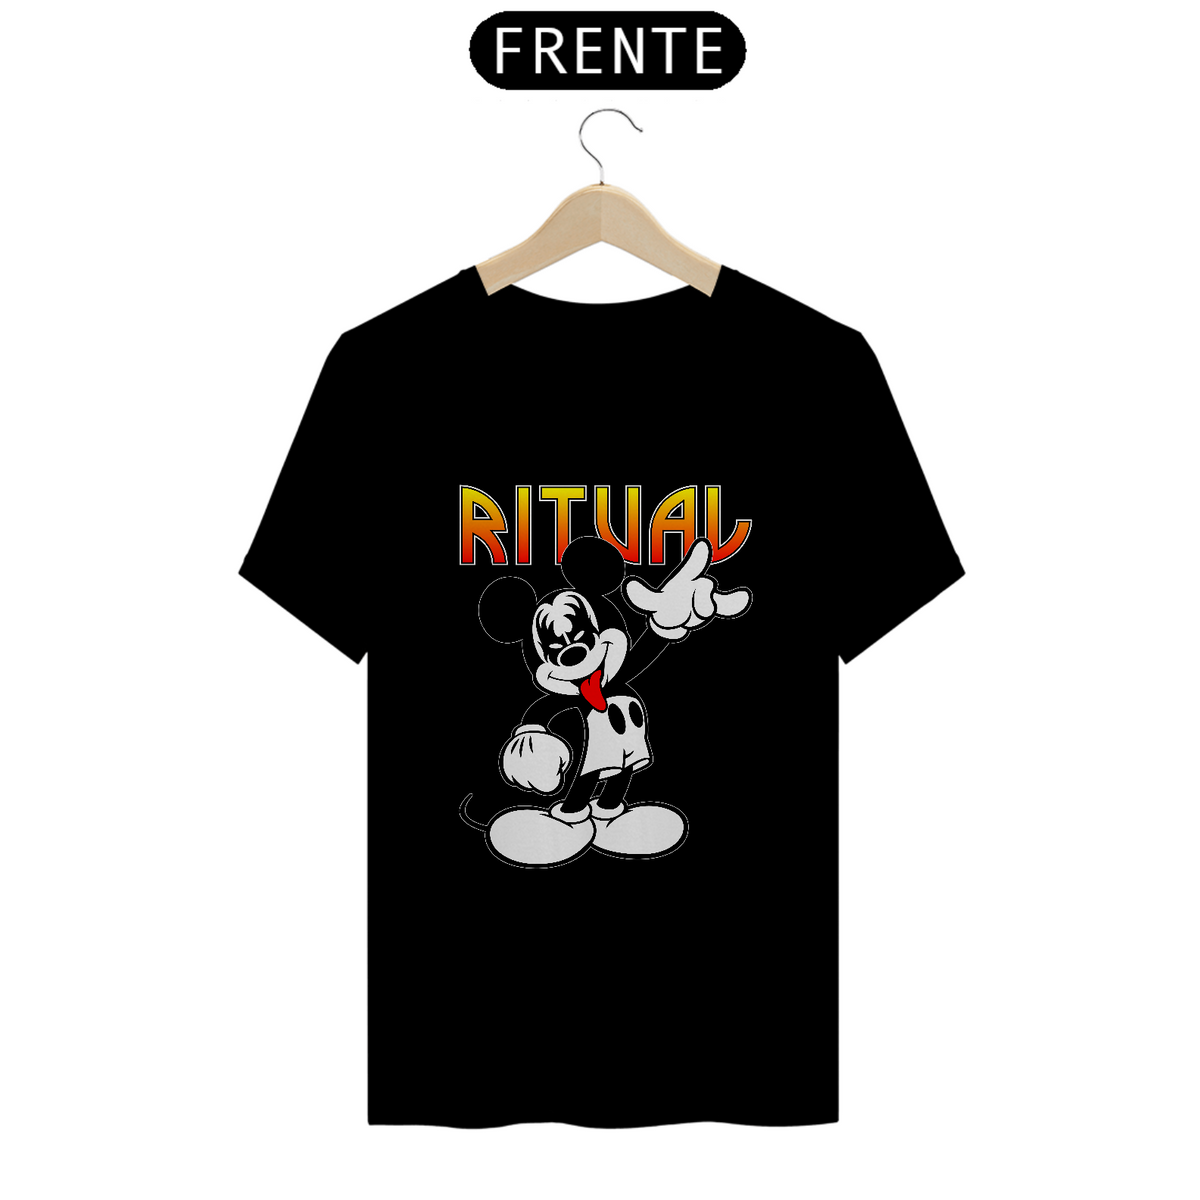 Nome do produto: Camiseta Ritual Mouse